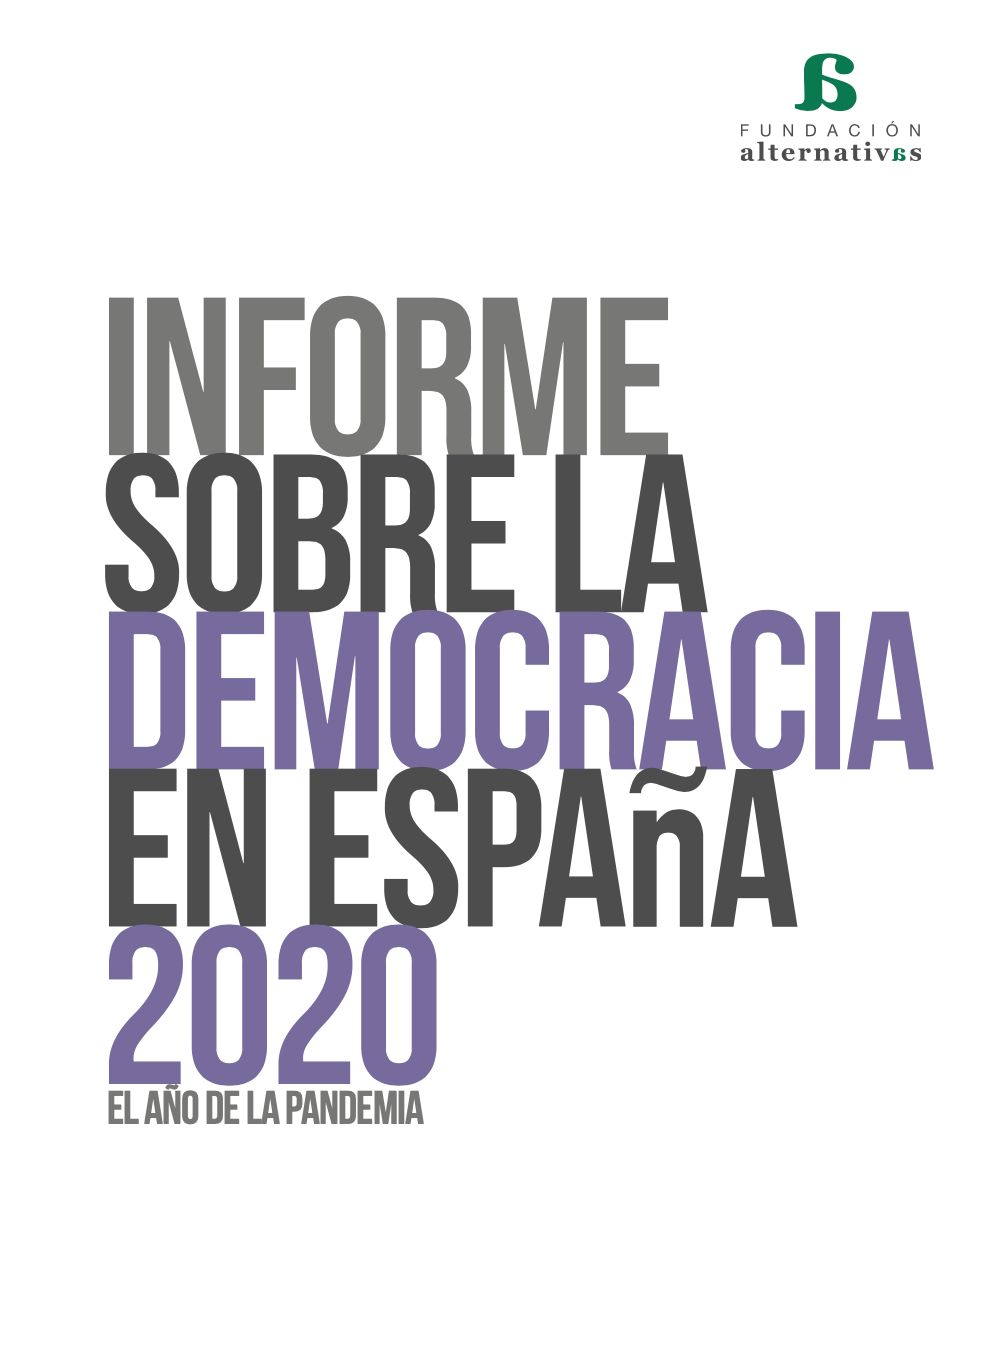 Imagen de portada del libro Informe sobre la democracia en España 2020